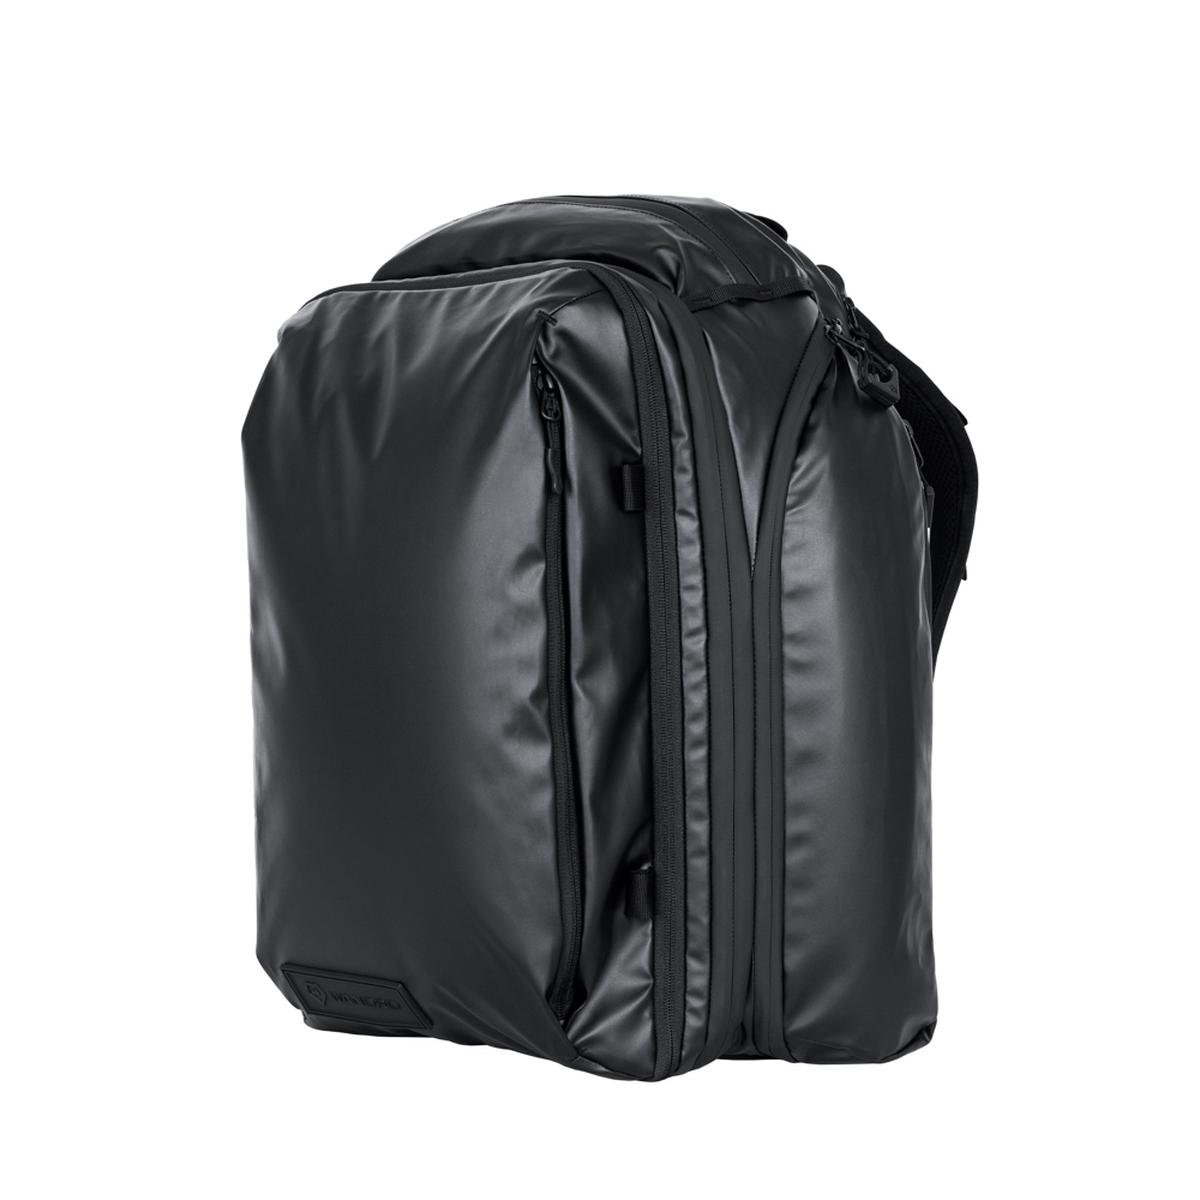 WANDRD Transit 35L Travel Backpack Black Essential Bundle